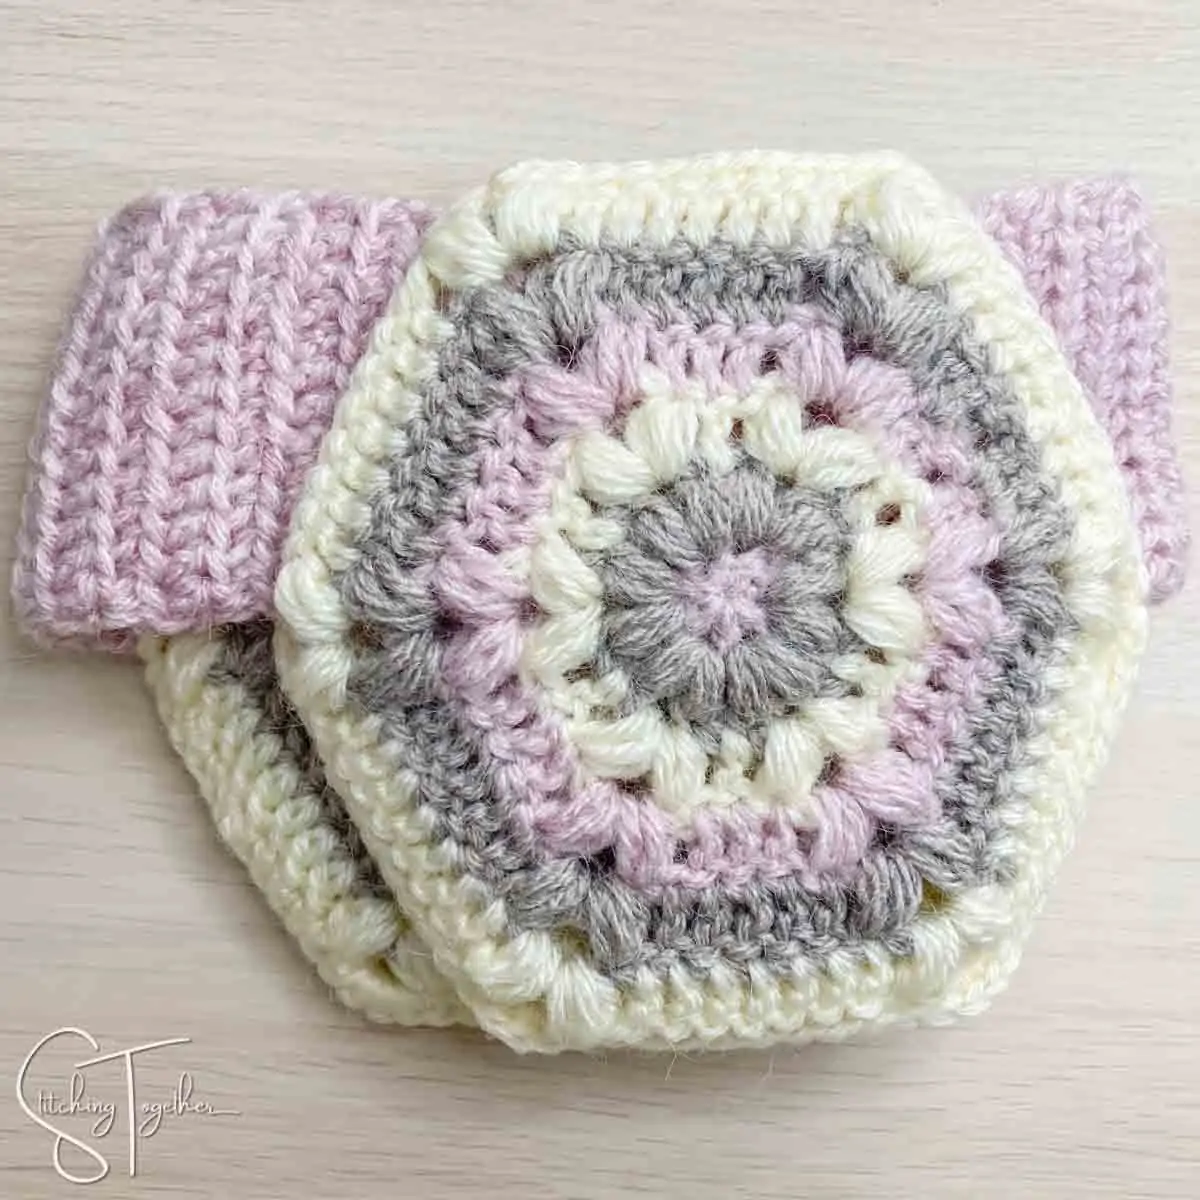 crochet headband with ear flaps added